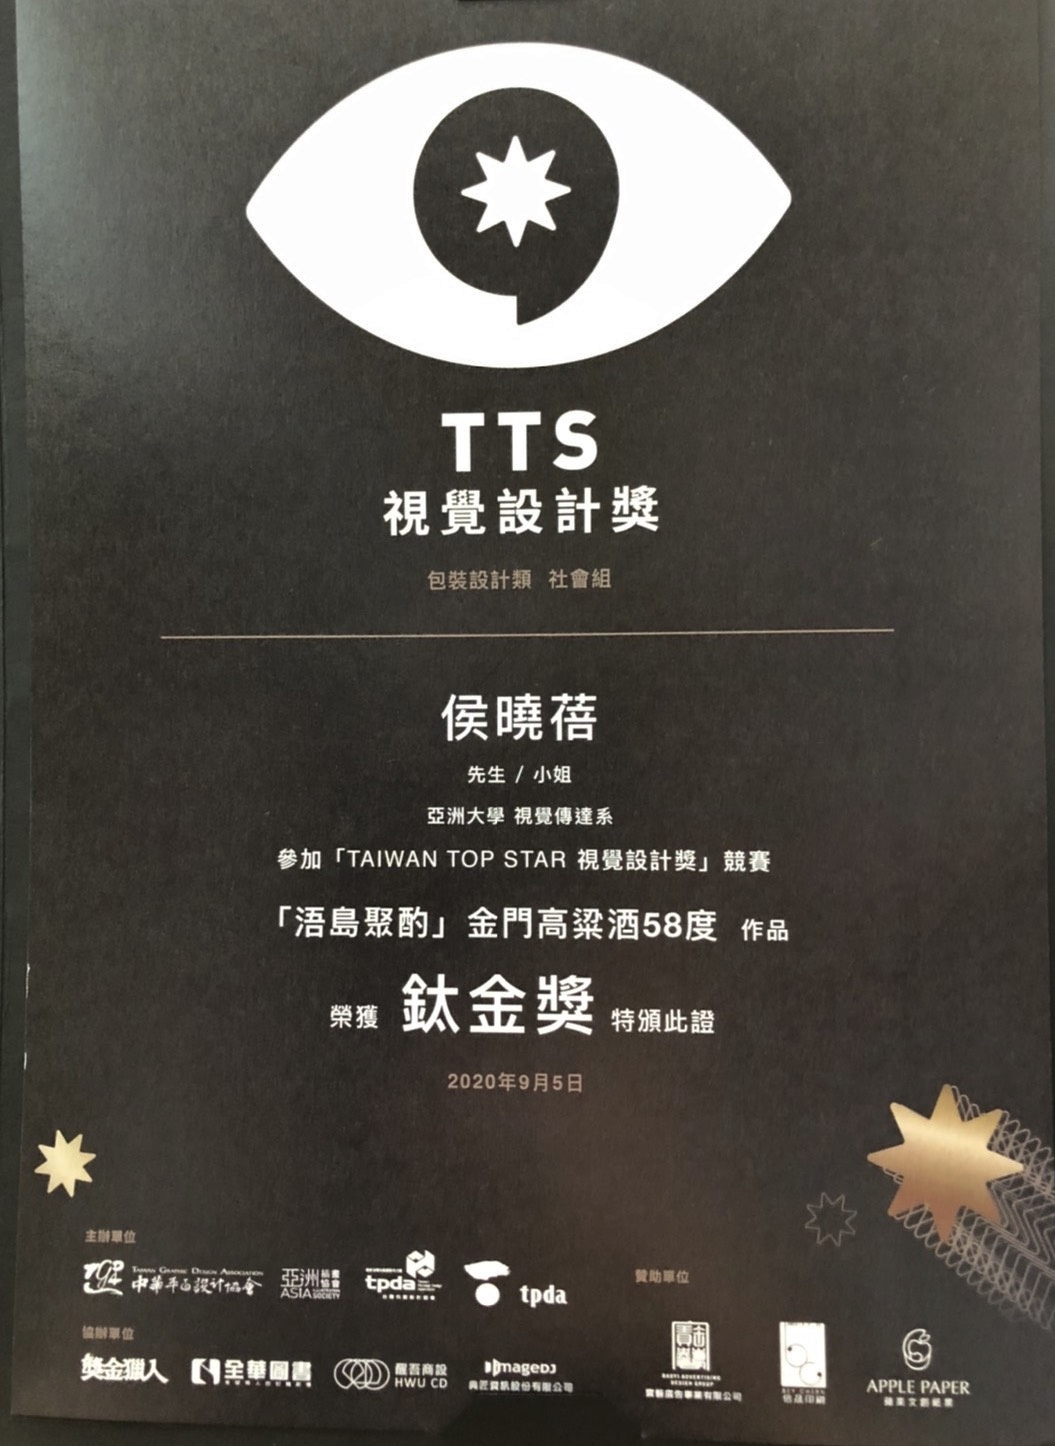 視傳系侯曉蓓老師以亞大視傳系老師身份，報名參加2020 Taiwan Top Star視覺設計獎競賽。